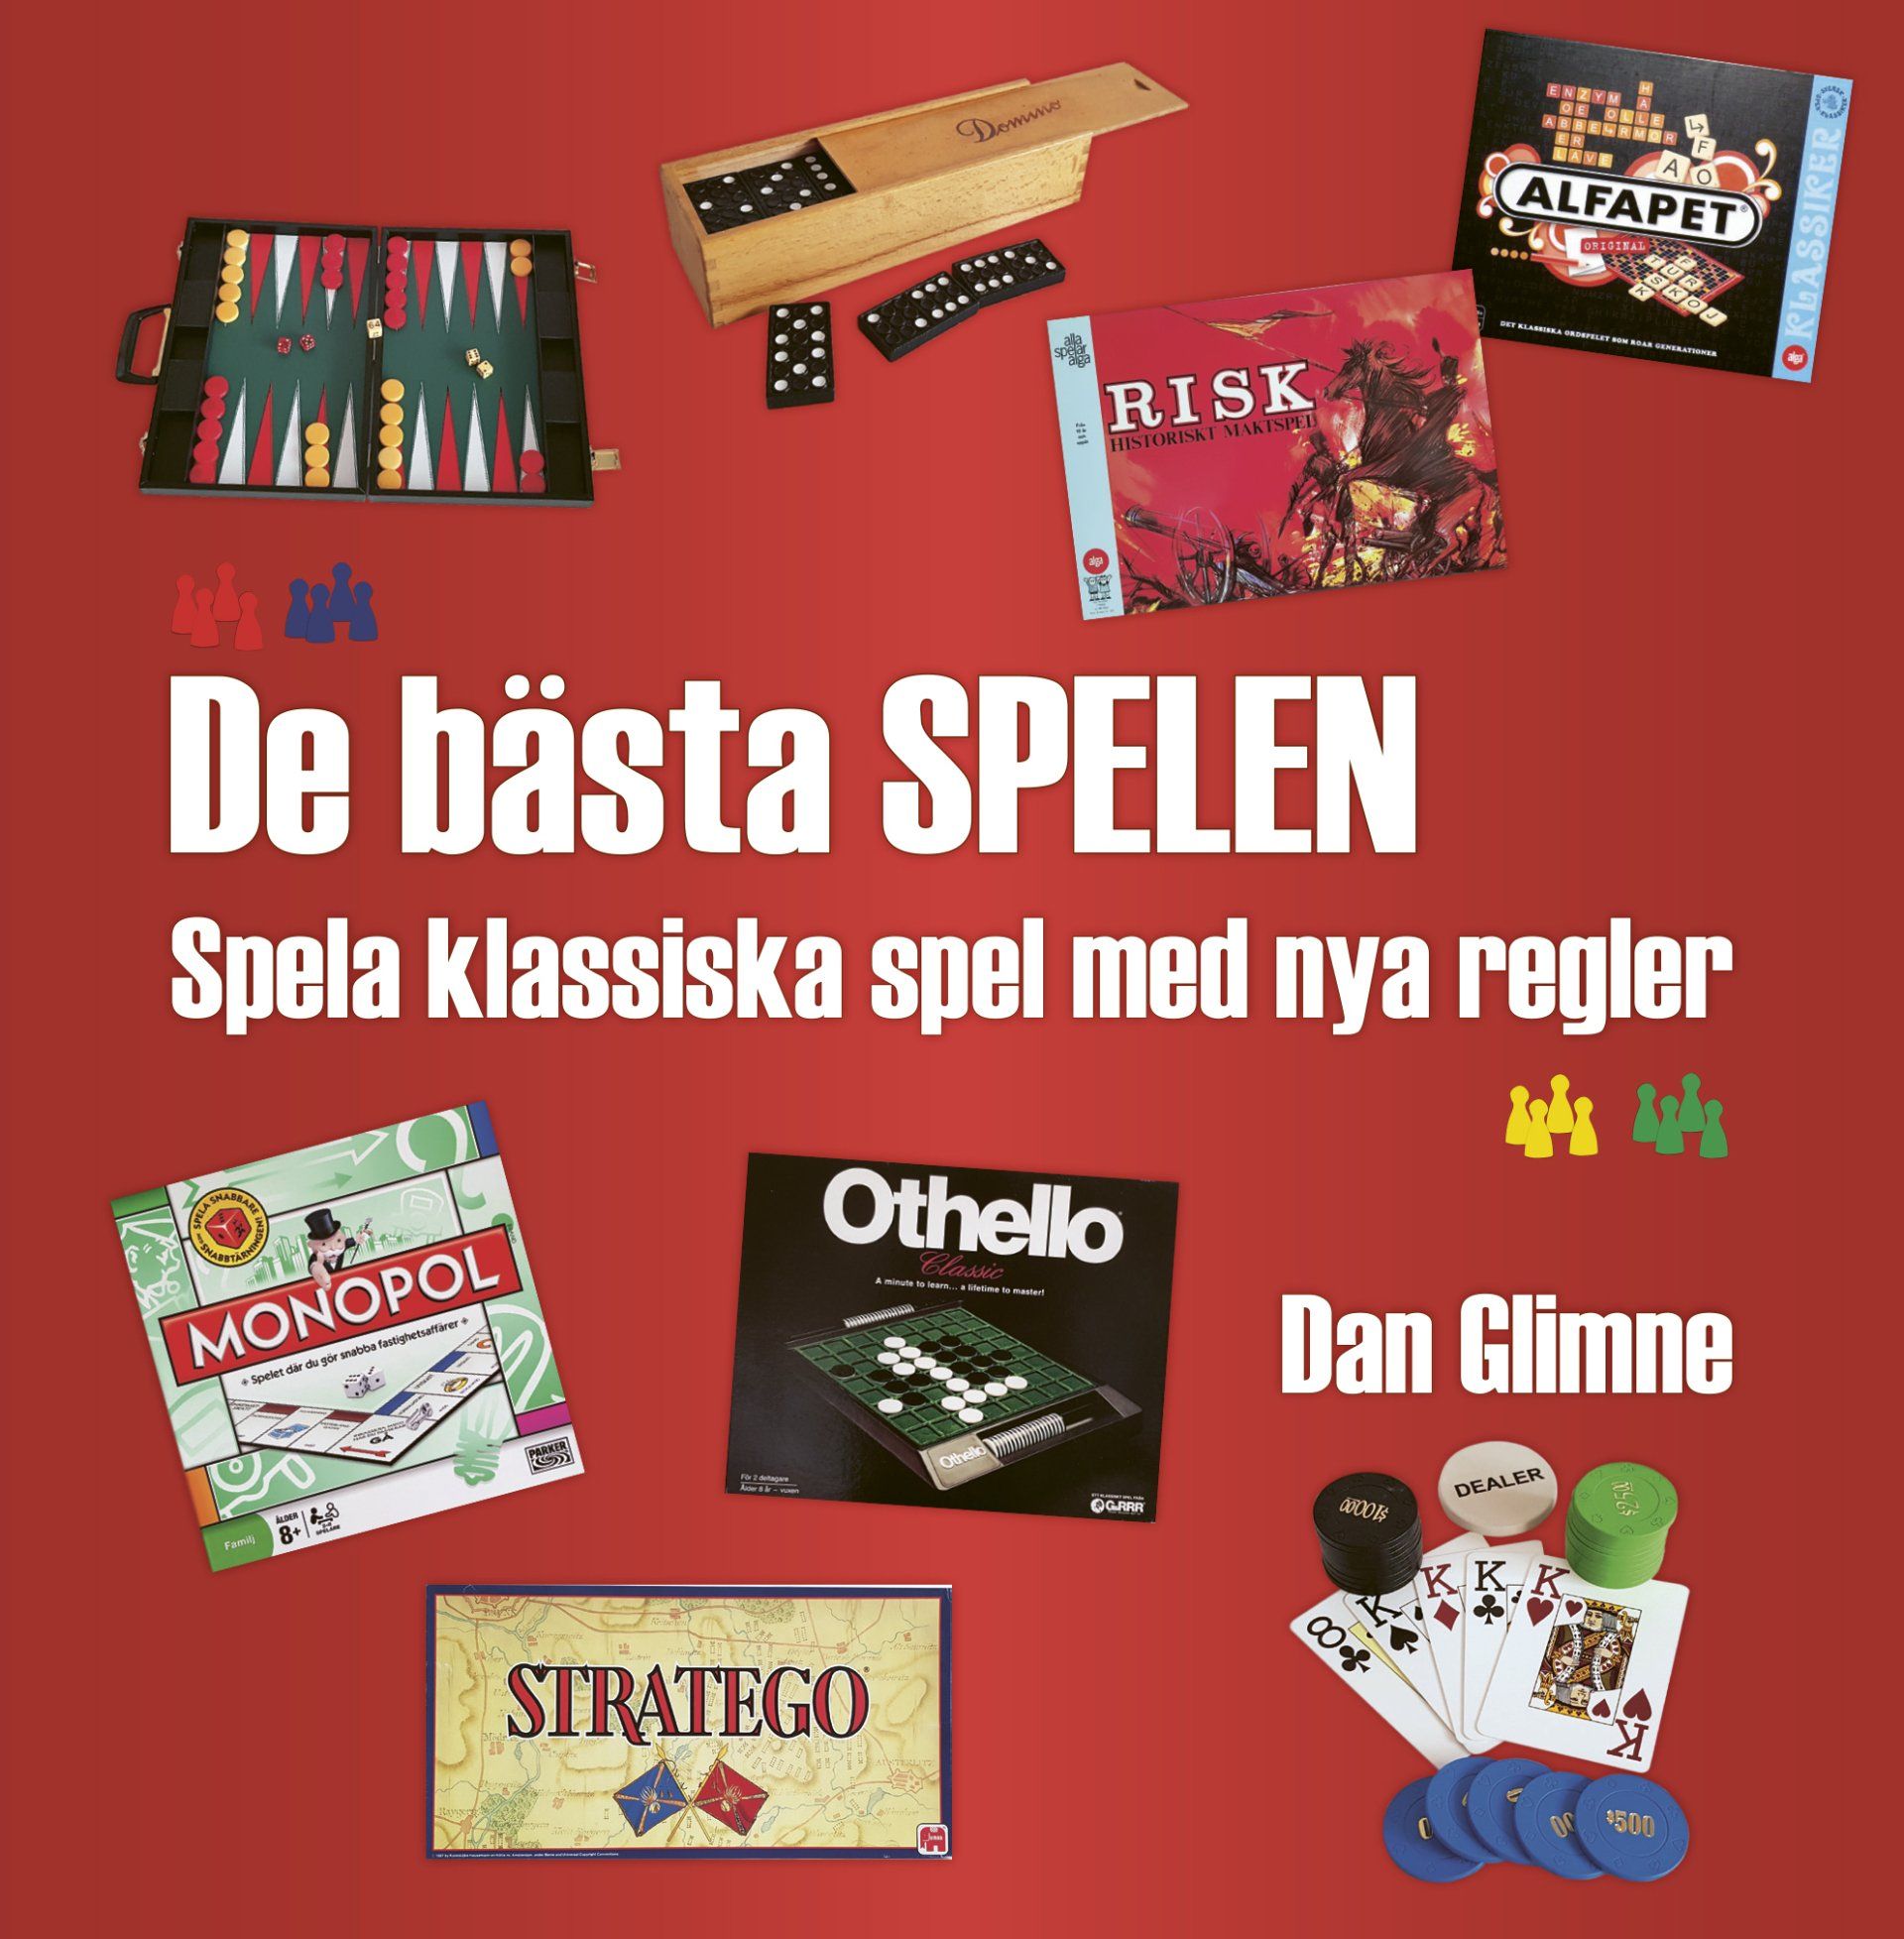 Faktaboken De bästa spelen – spela klassiska spel med nya regler är skriven av Dan Glimne på Stevali Bokförlag.